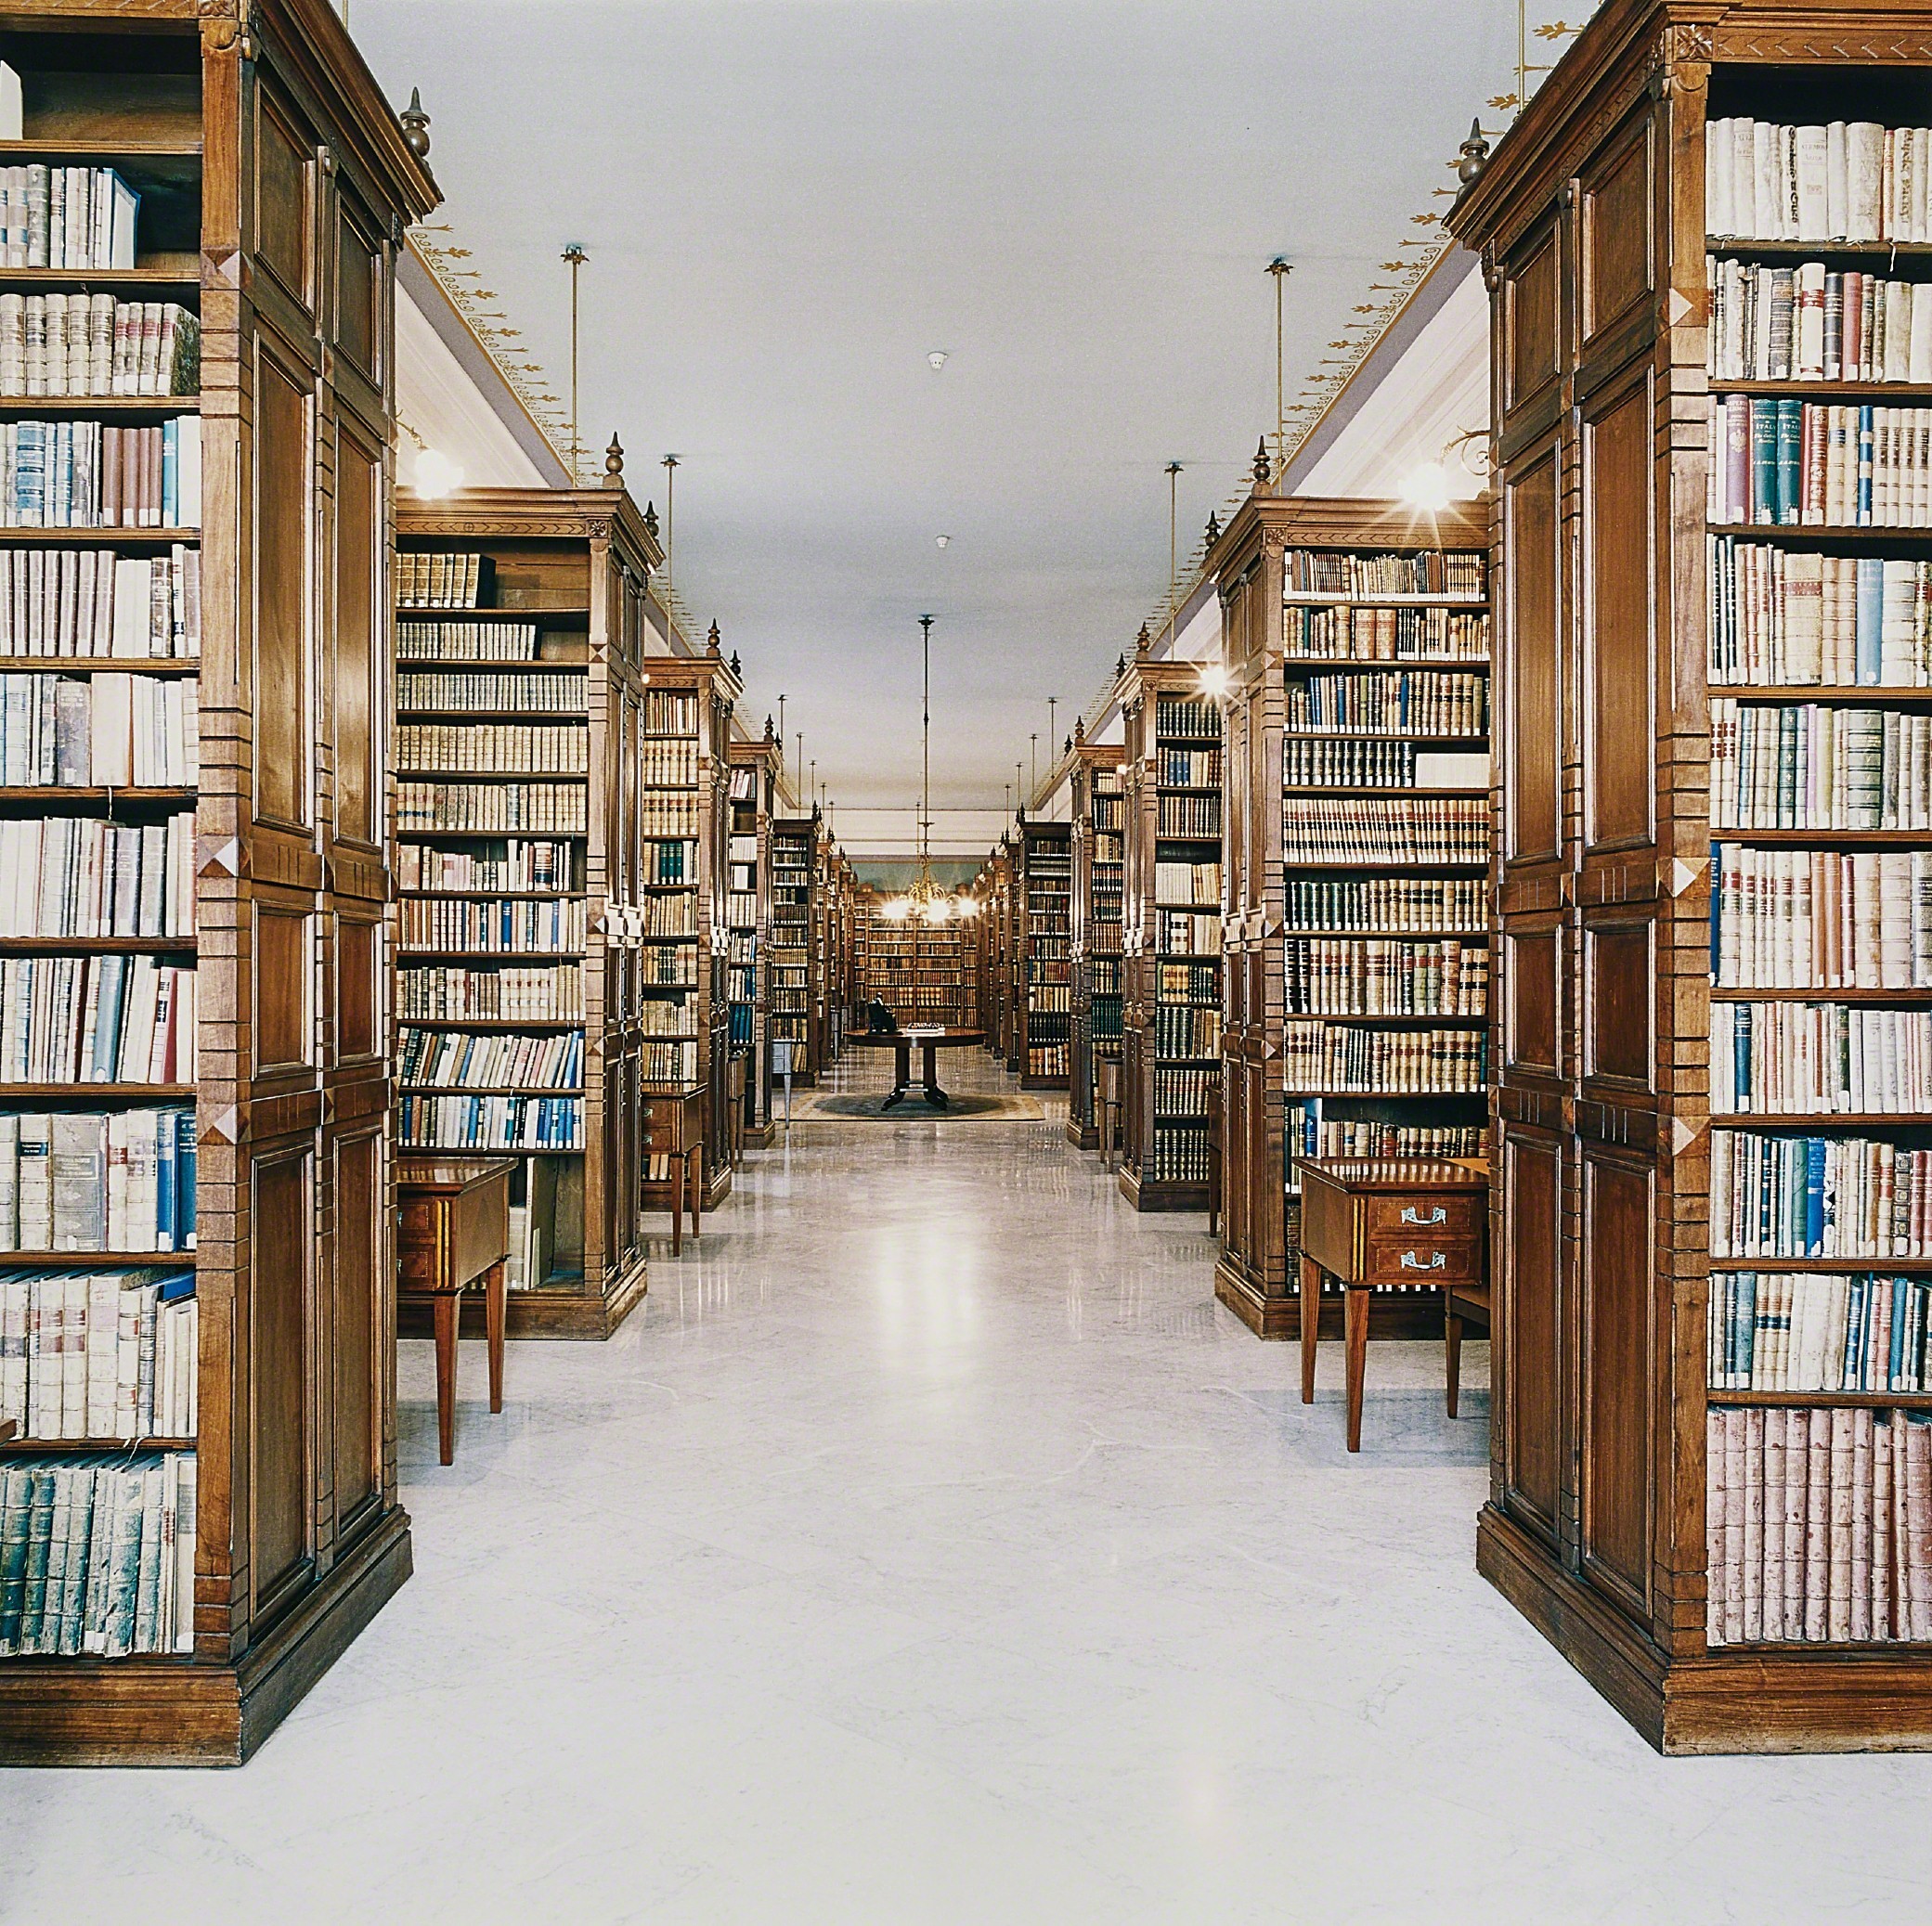 Библиотека Королевской академии испанского языка, Мадрид, 2000. Фотограф Кандида Хёфер